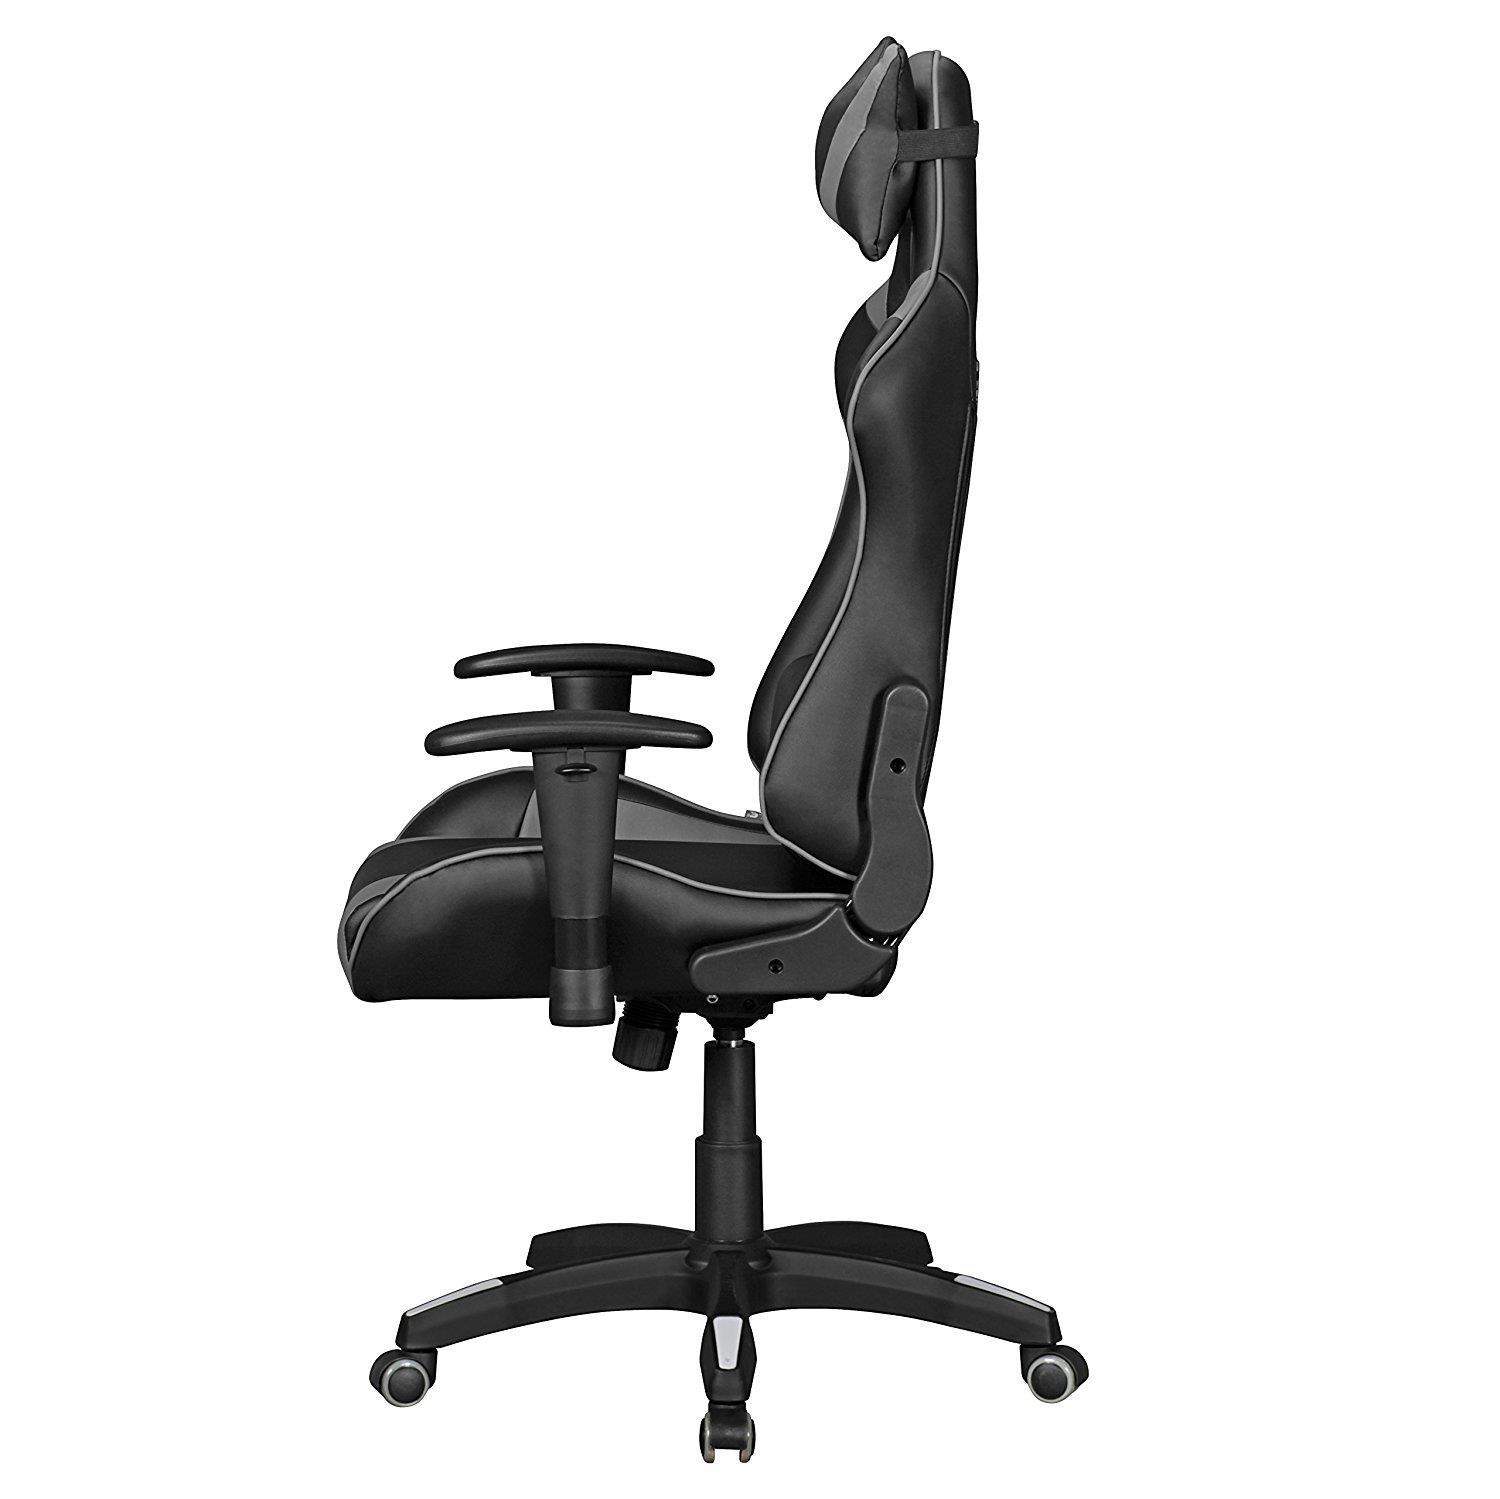 Fauteuil chaise de bureau gaming gamer avec coussin noir gris